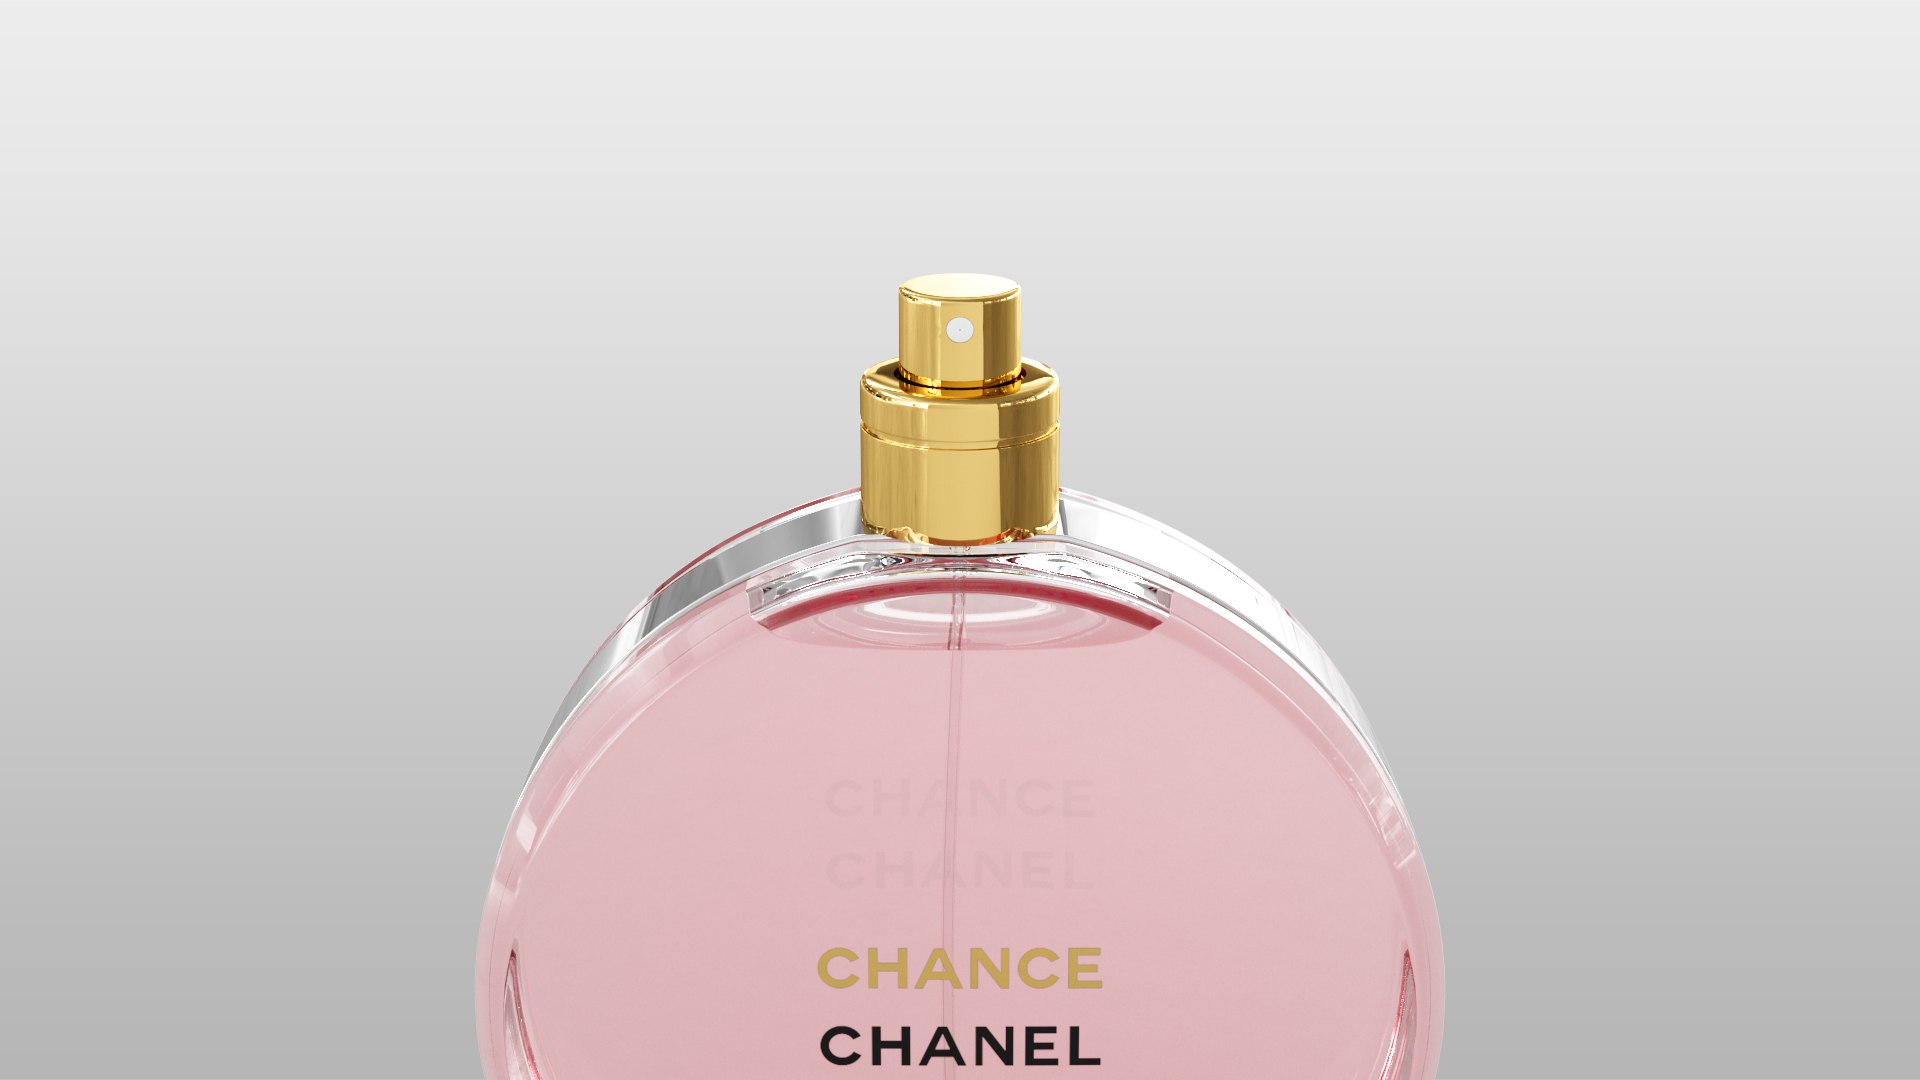 Chanel chance eau tendre 3D model - TurboSquid 1485573